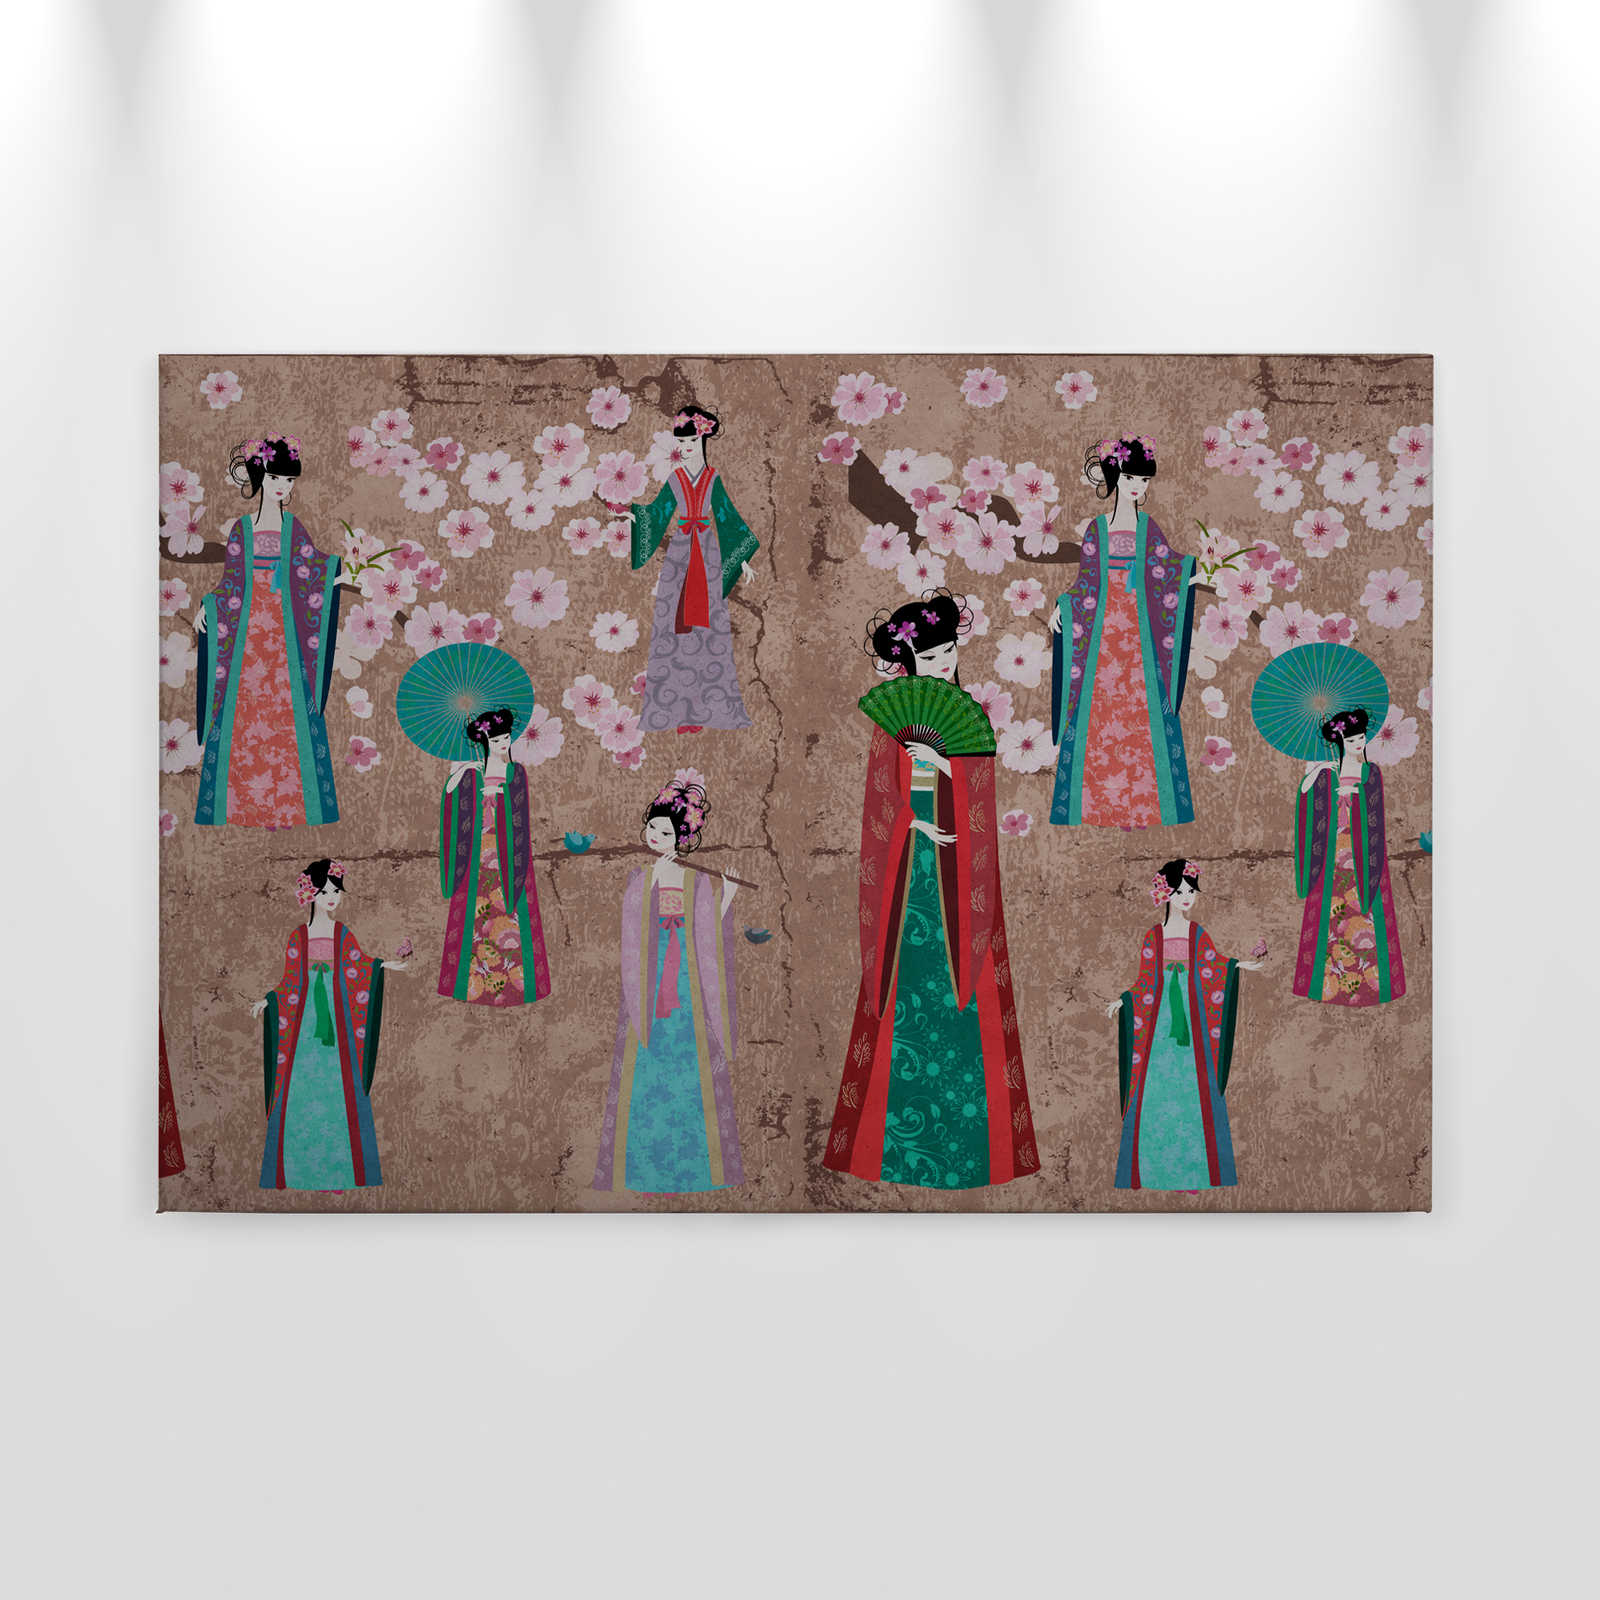             Canvas schilderij Japan Comic met kersenbloesems | beige, blauw - 0,90 m x 0,60 m
        